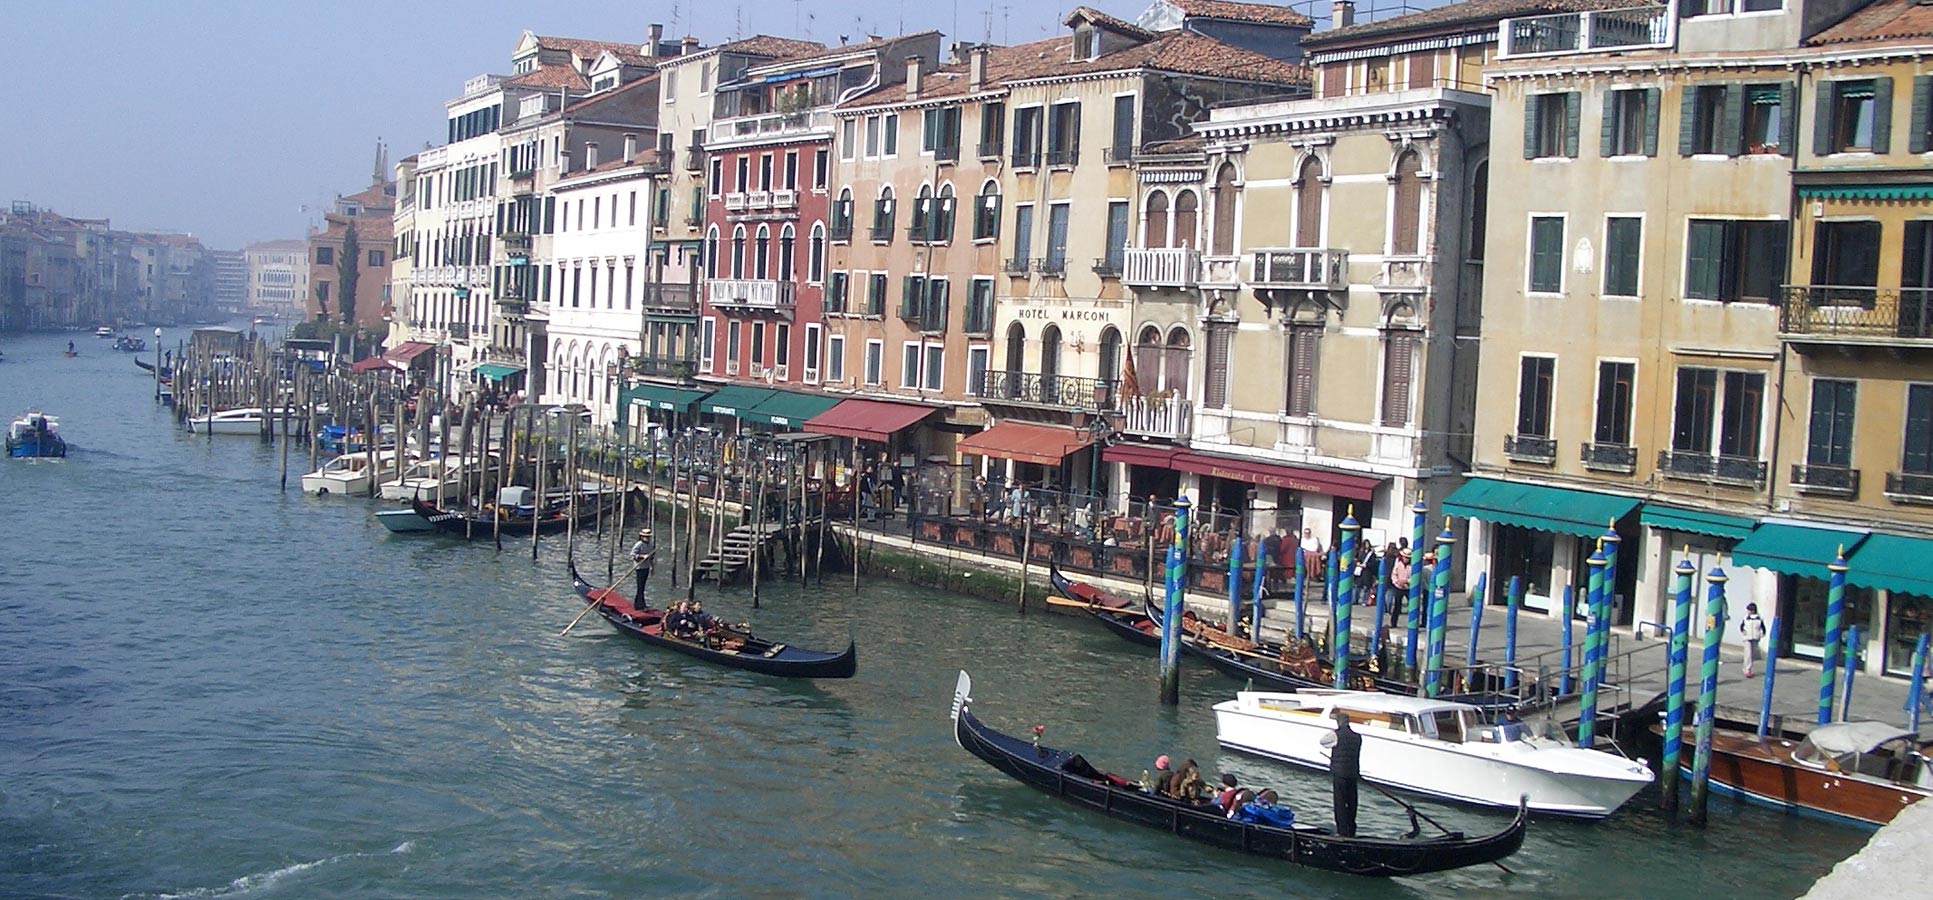 Travel reviews Venice Italy